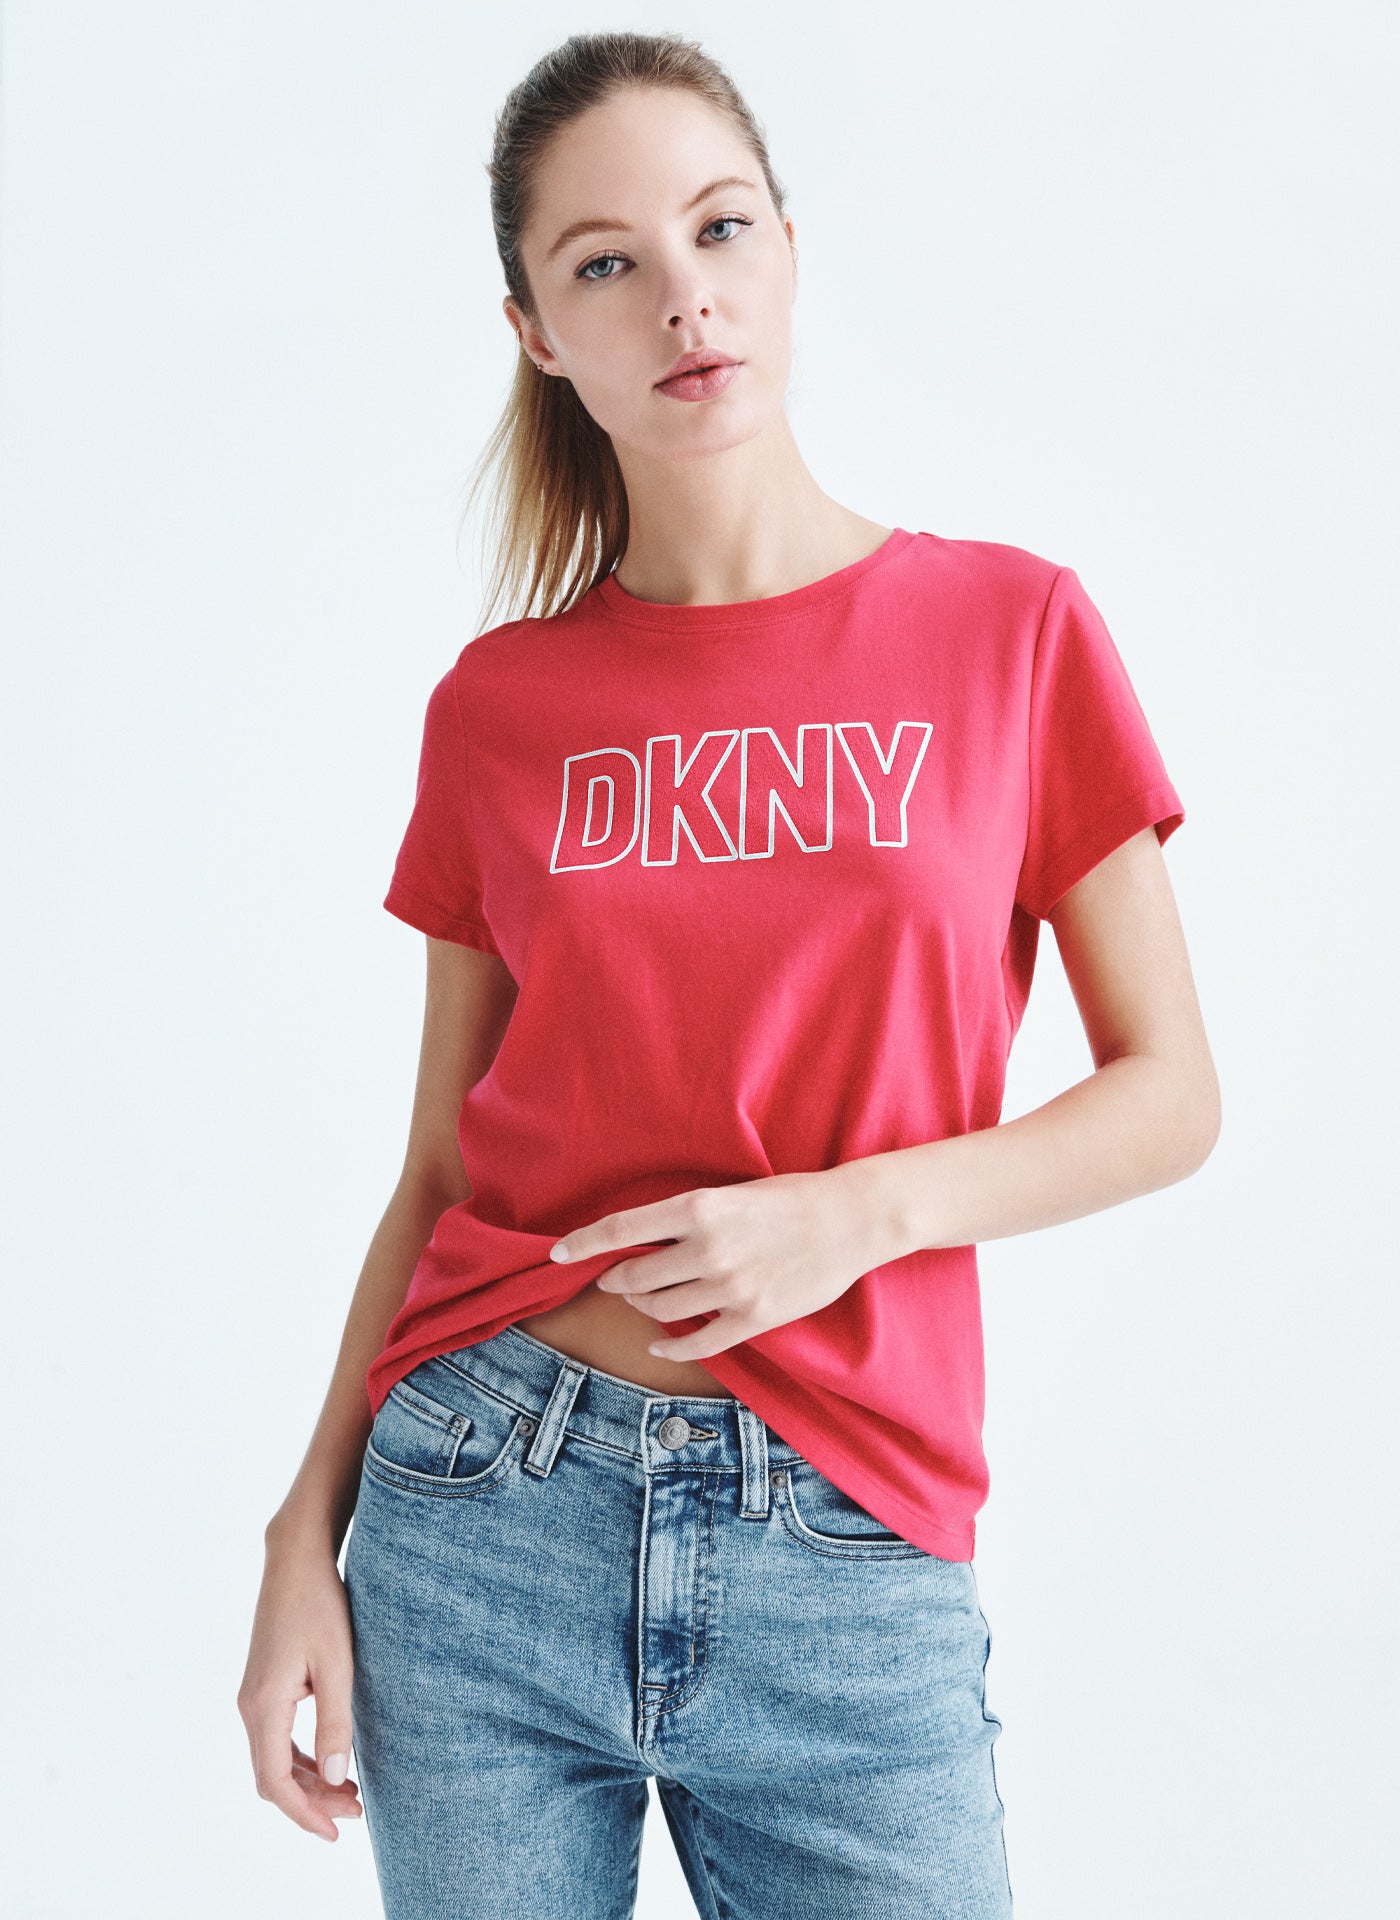 DKNY FOIL LOGO CREW NECK TEE,Pink